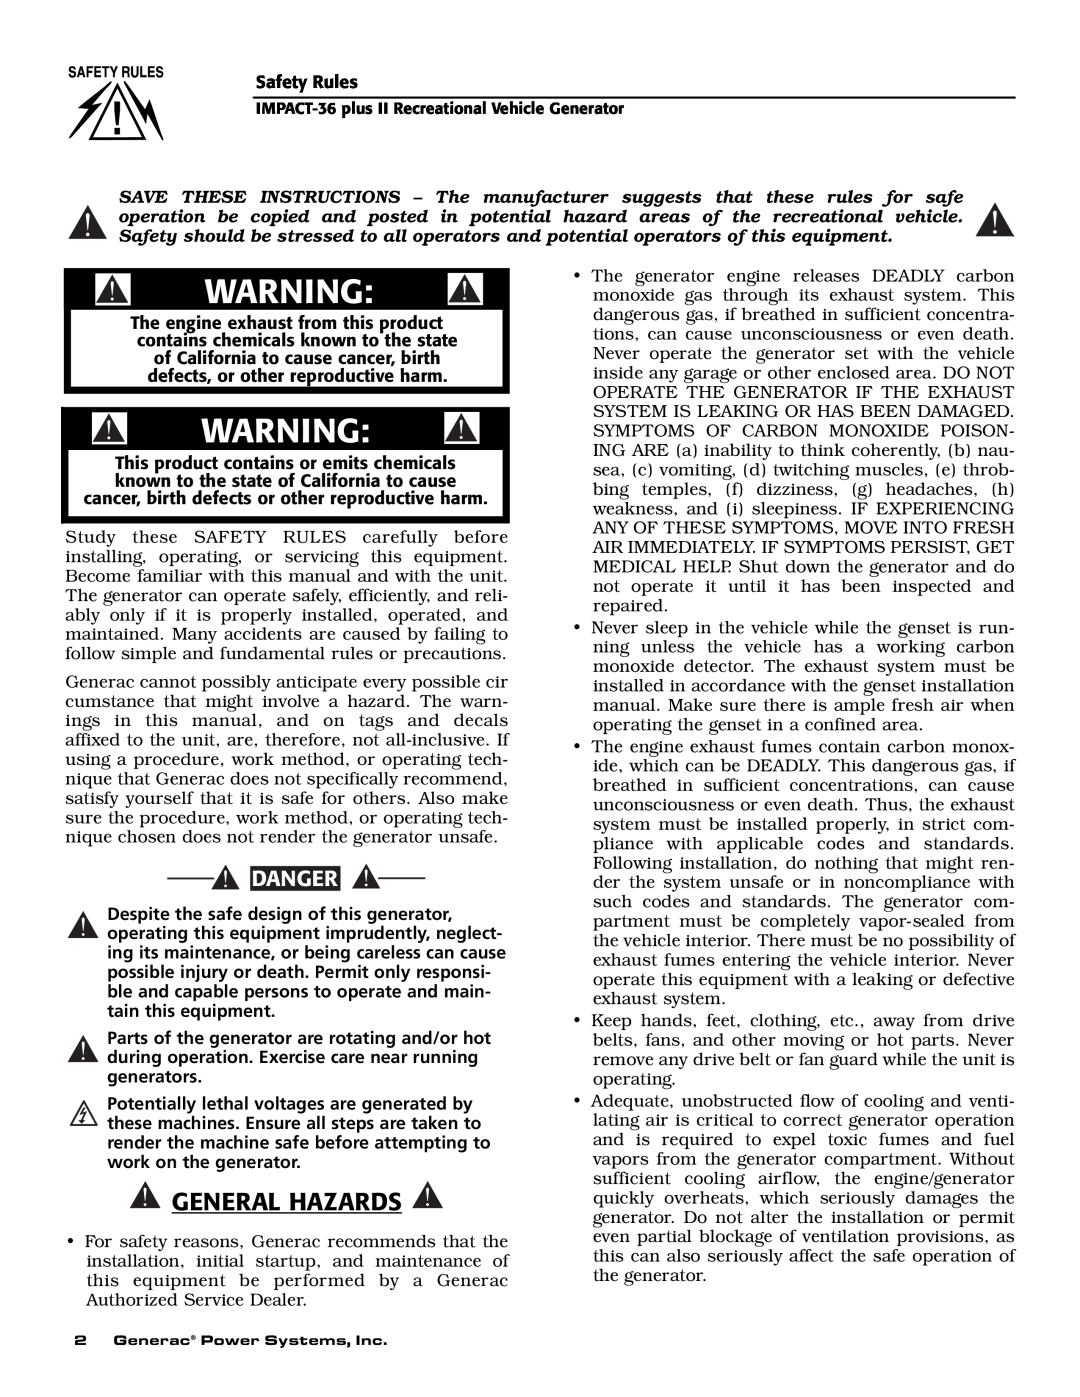 Generac 00941-3 owner manual General Hazards, Danger 